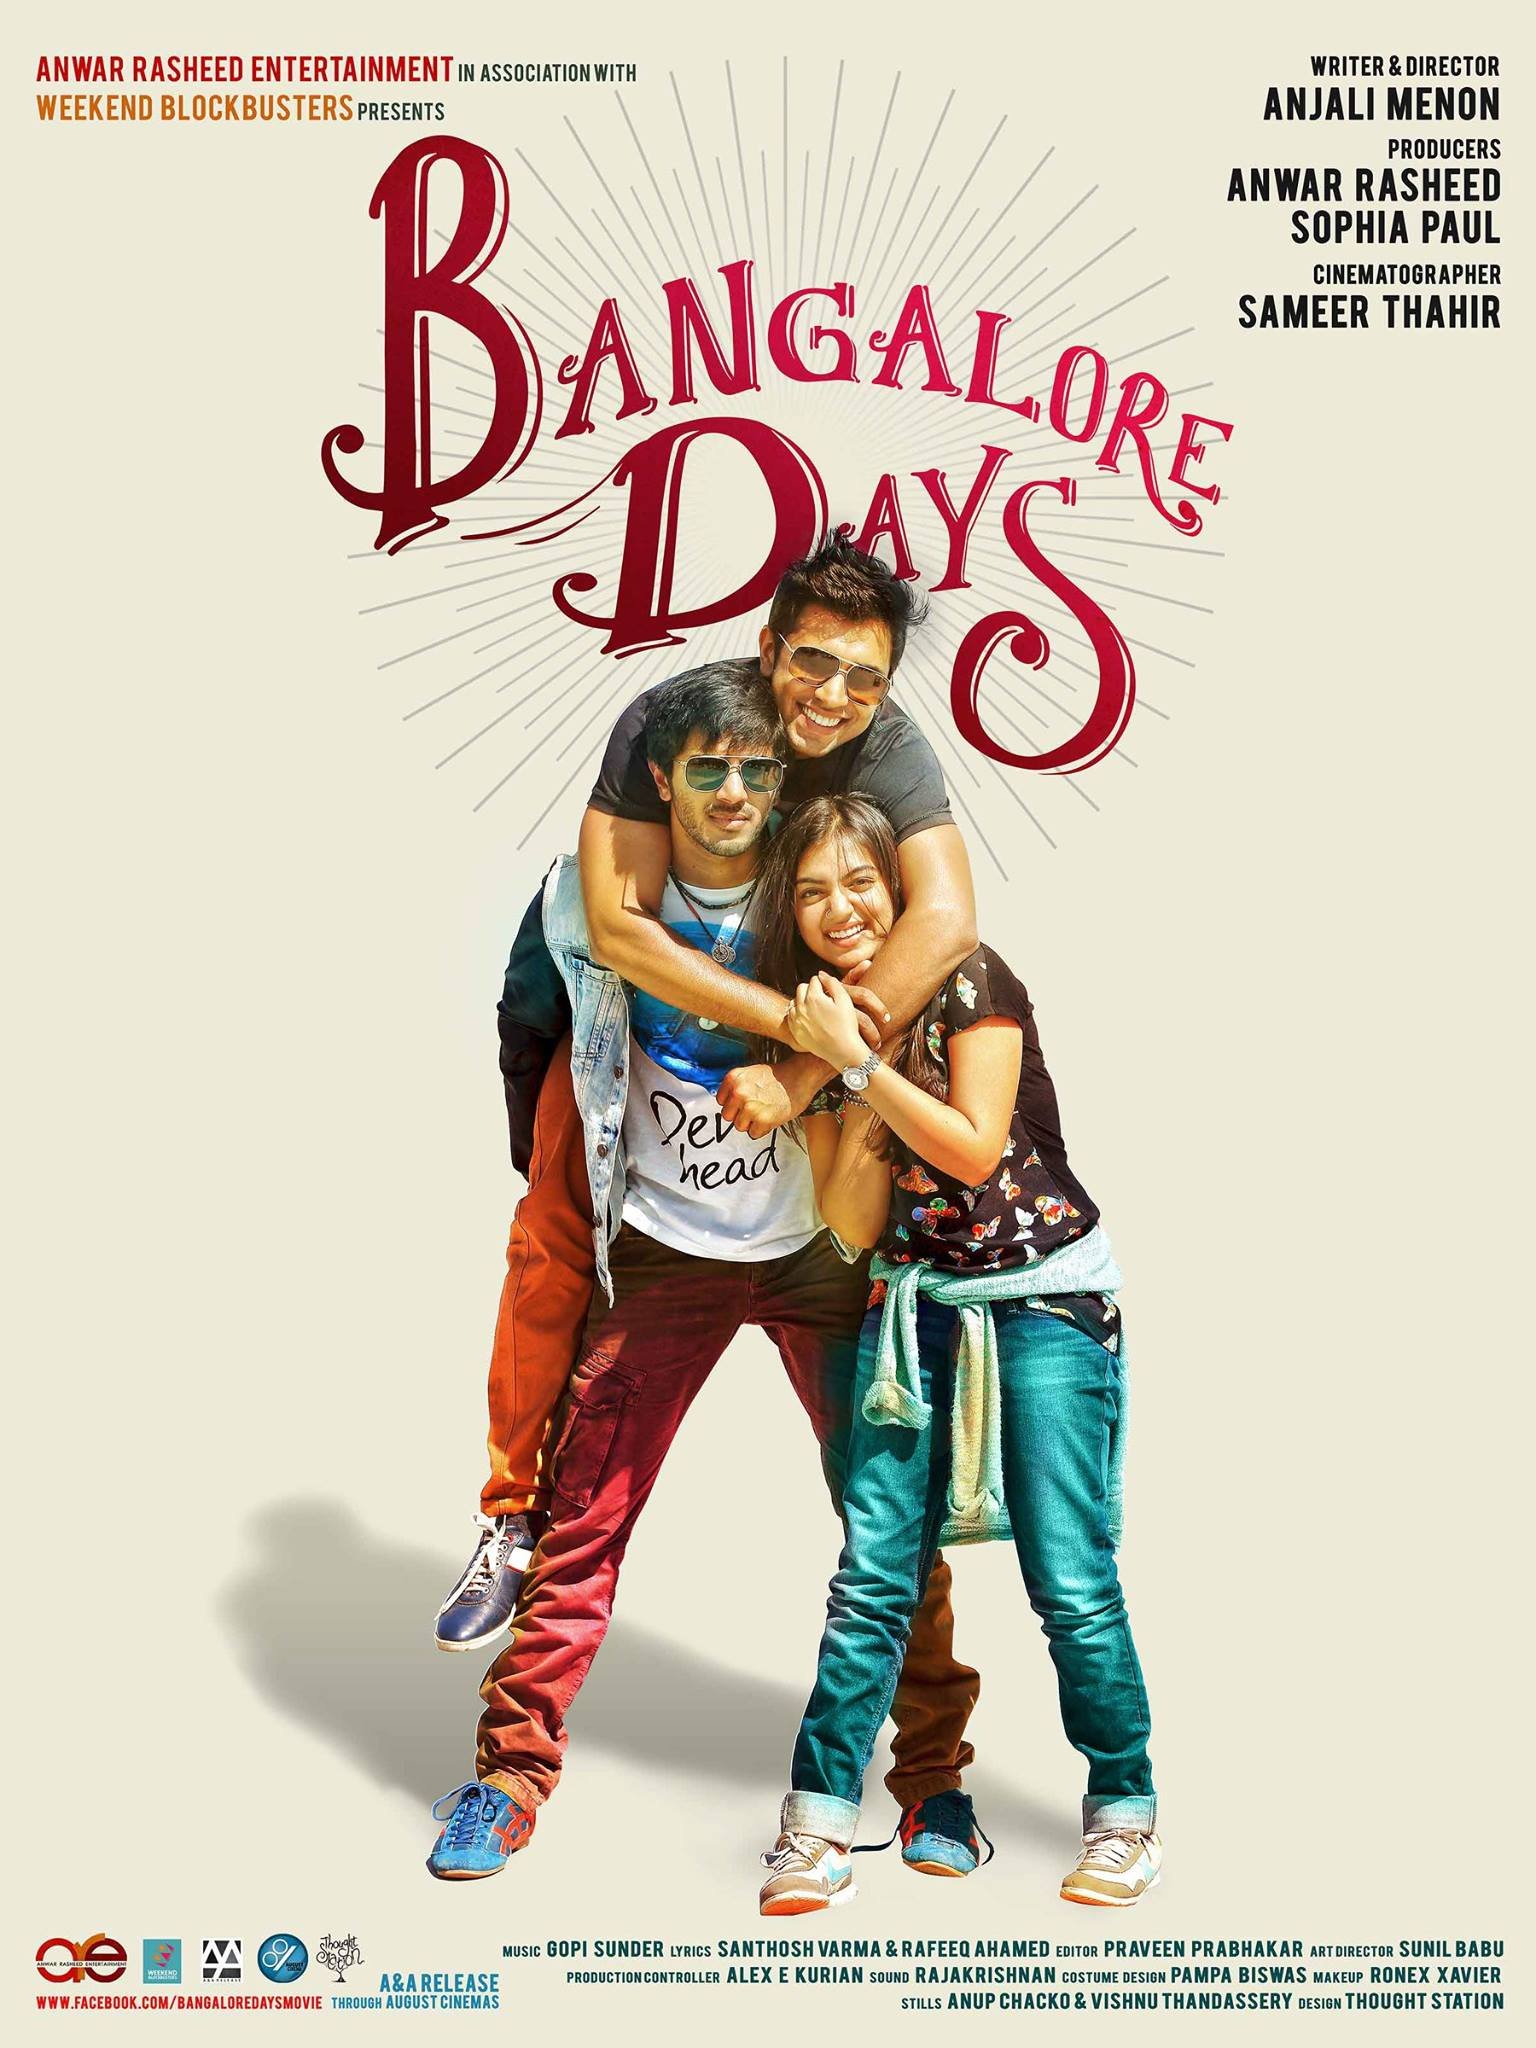 Malayalam poster of the movie Bangalore Days